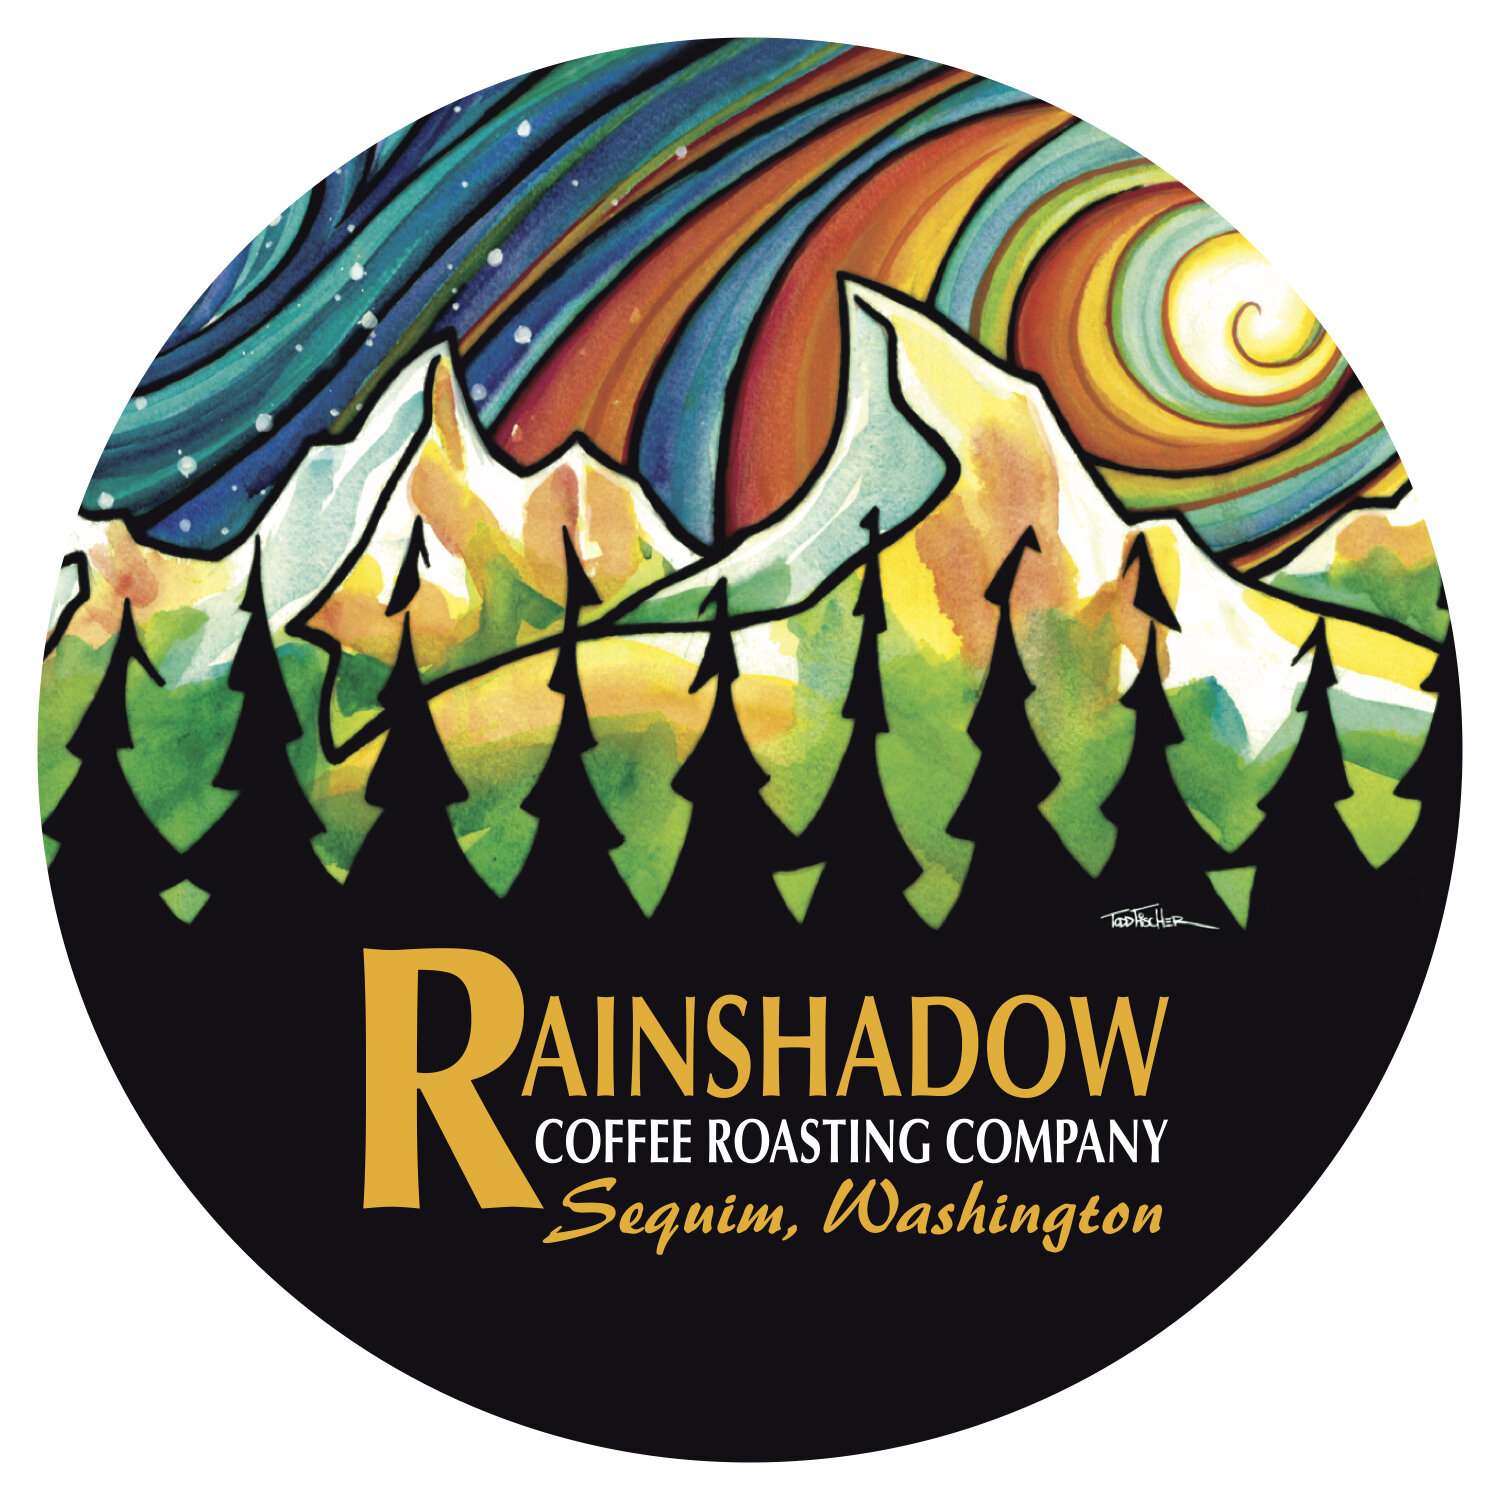 Rainshadow Coffee Roasting Company